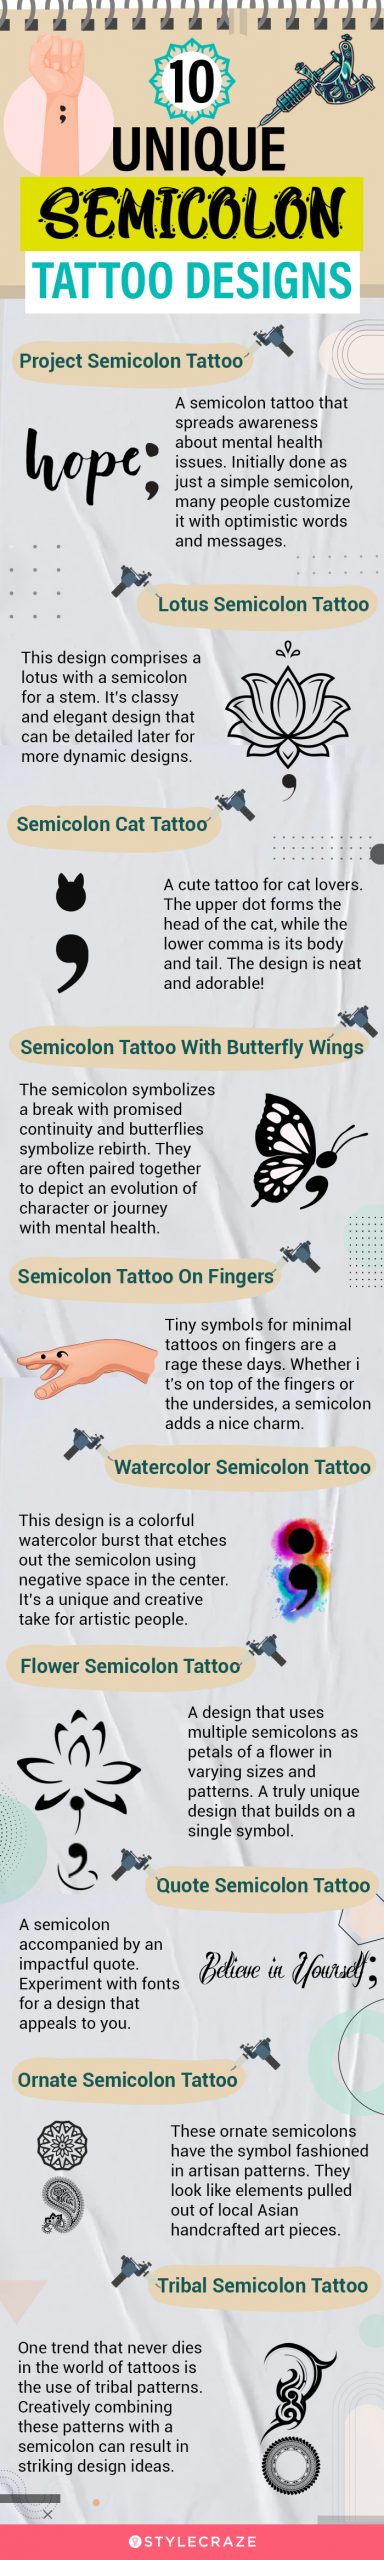 10 unique semicolon tattoo designs [infographic]